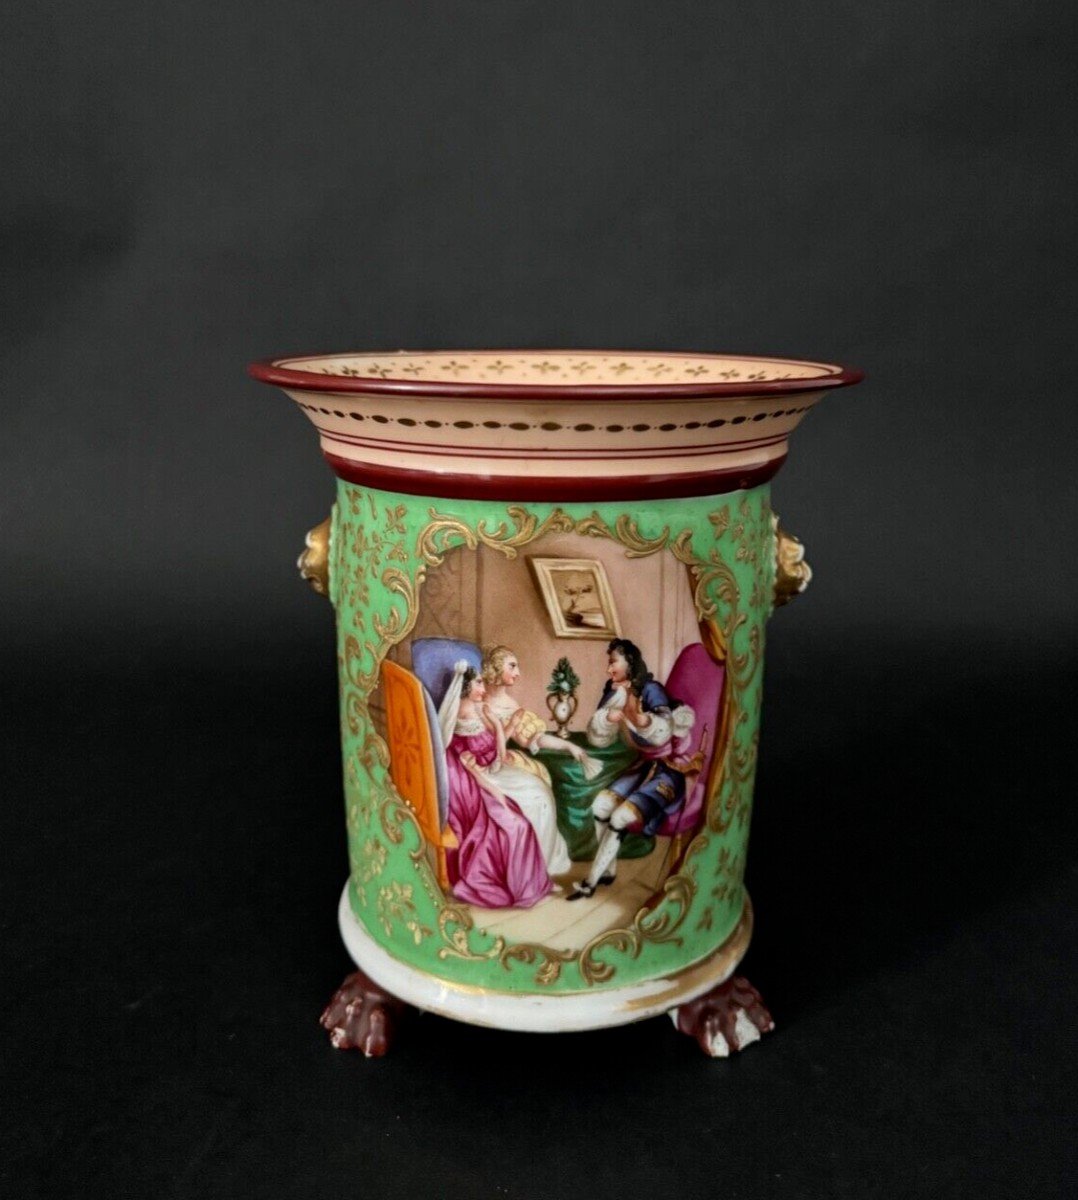 Cache-pot époque Louis-Philippe décor romantique XIXe fond vert